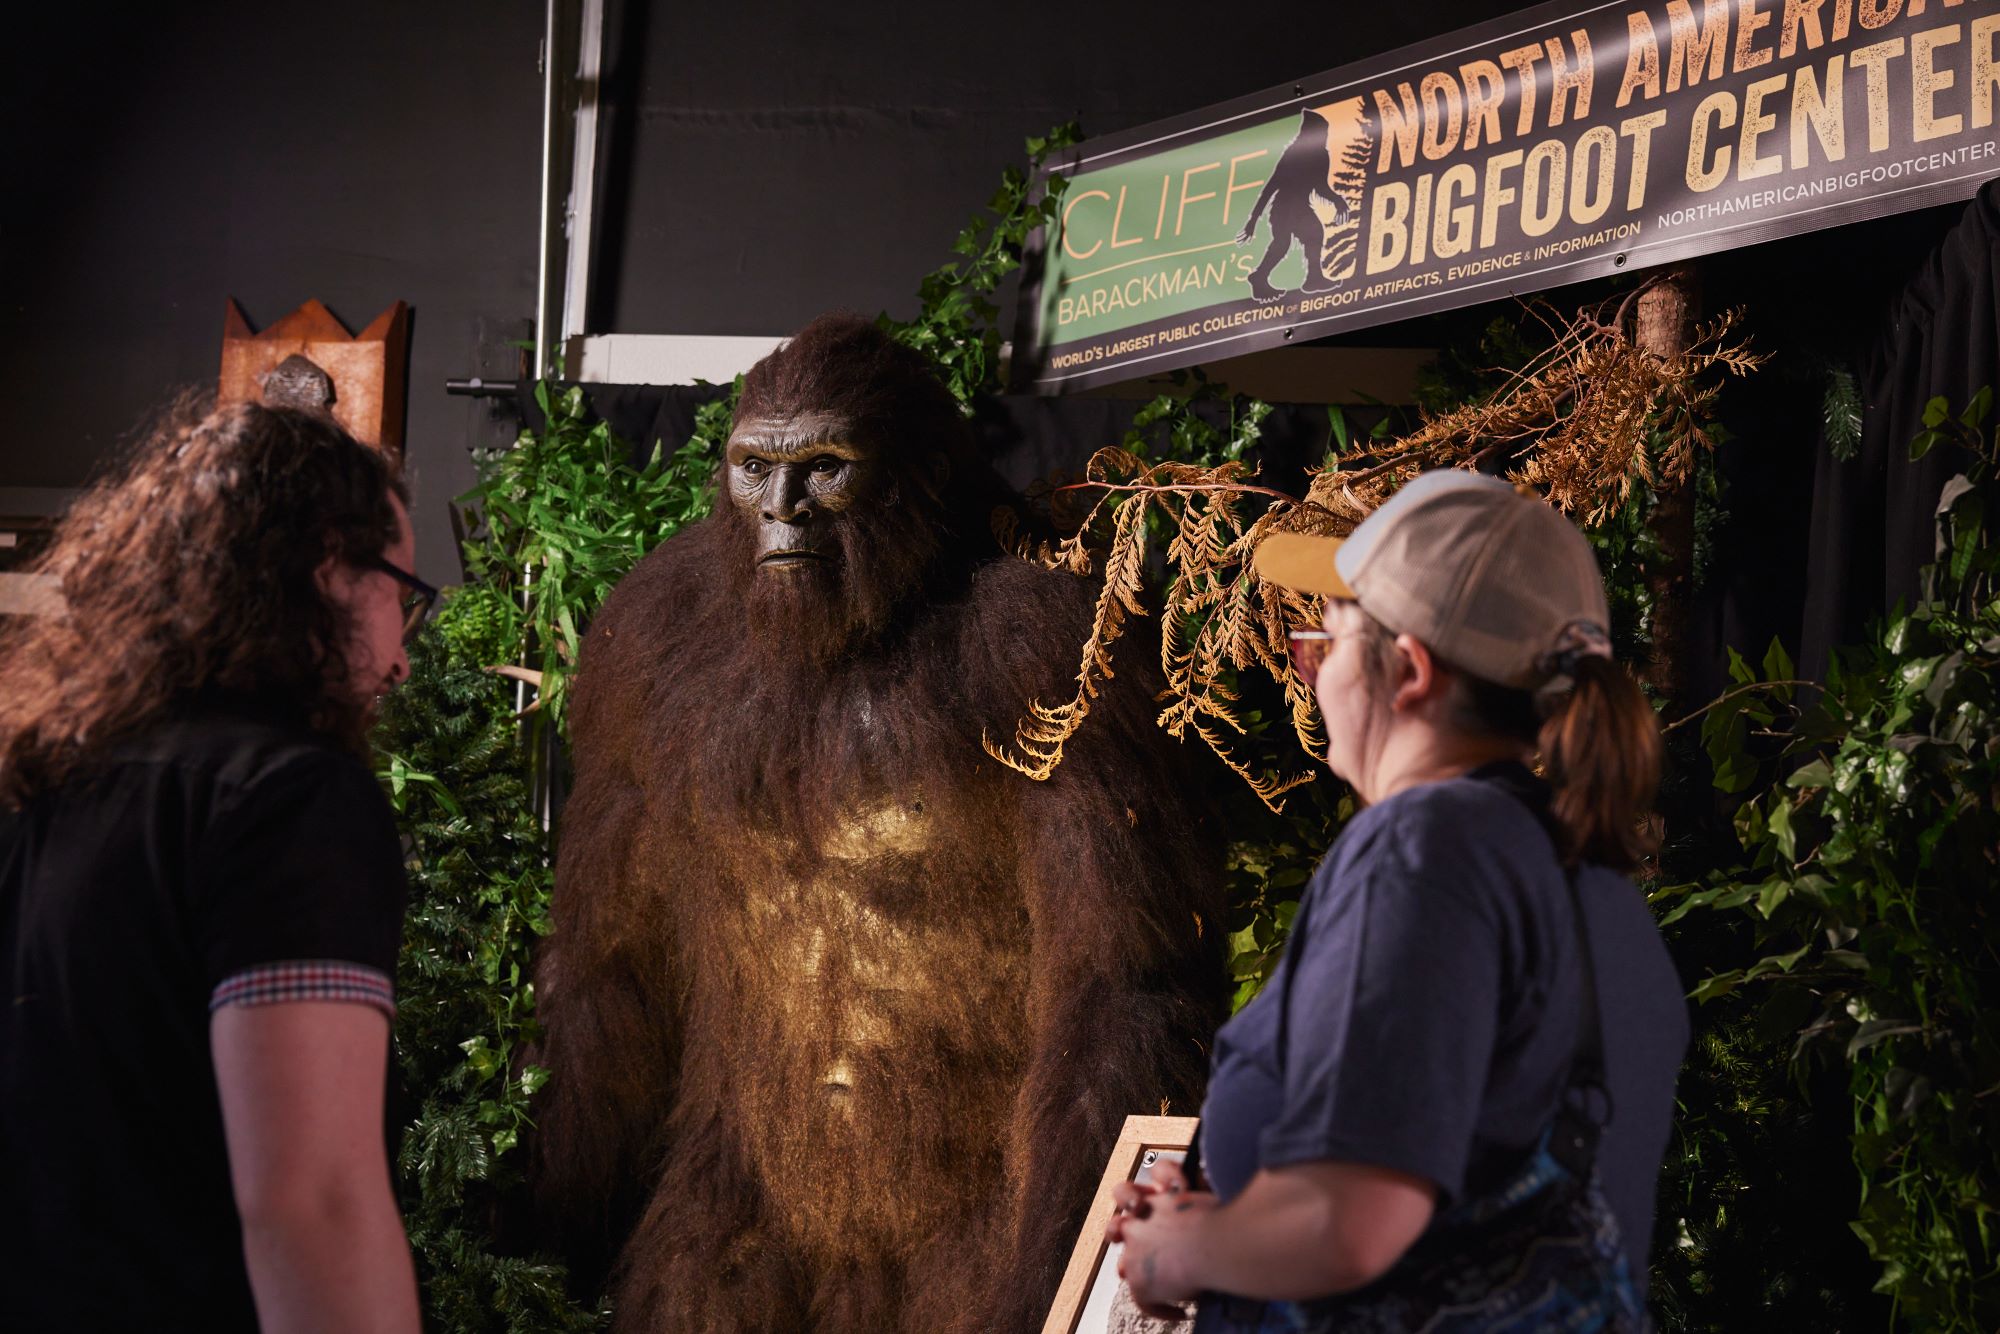 Two visitors look at bigfoot at the North American Bigfoot Center